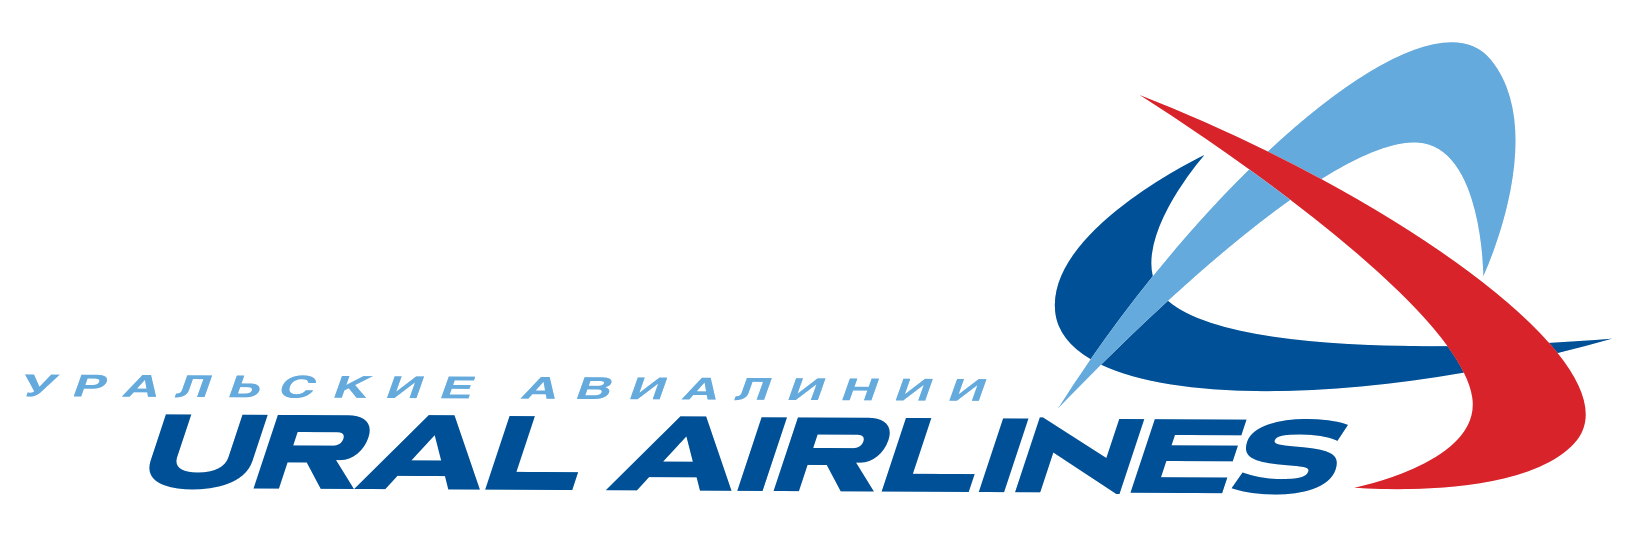 Ural_Airlines_logo